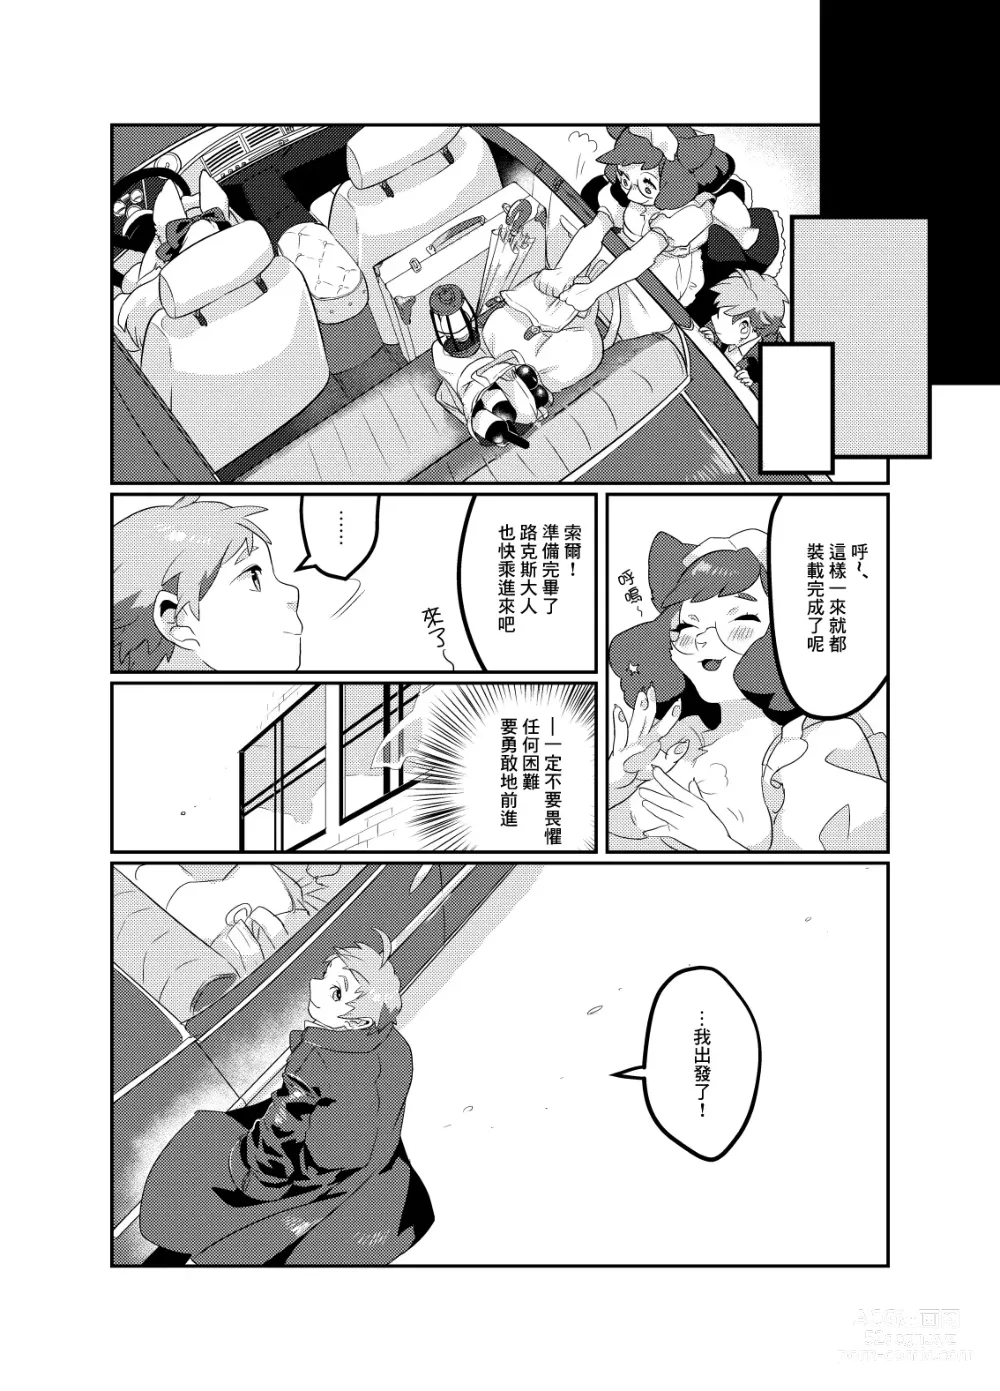 Page 48 of doujinshi Meido inHEAVEN